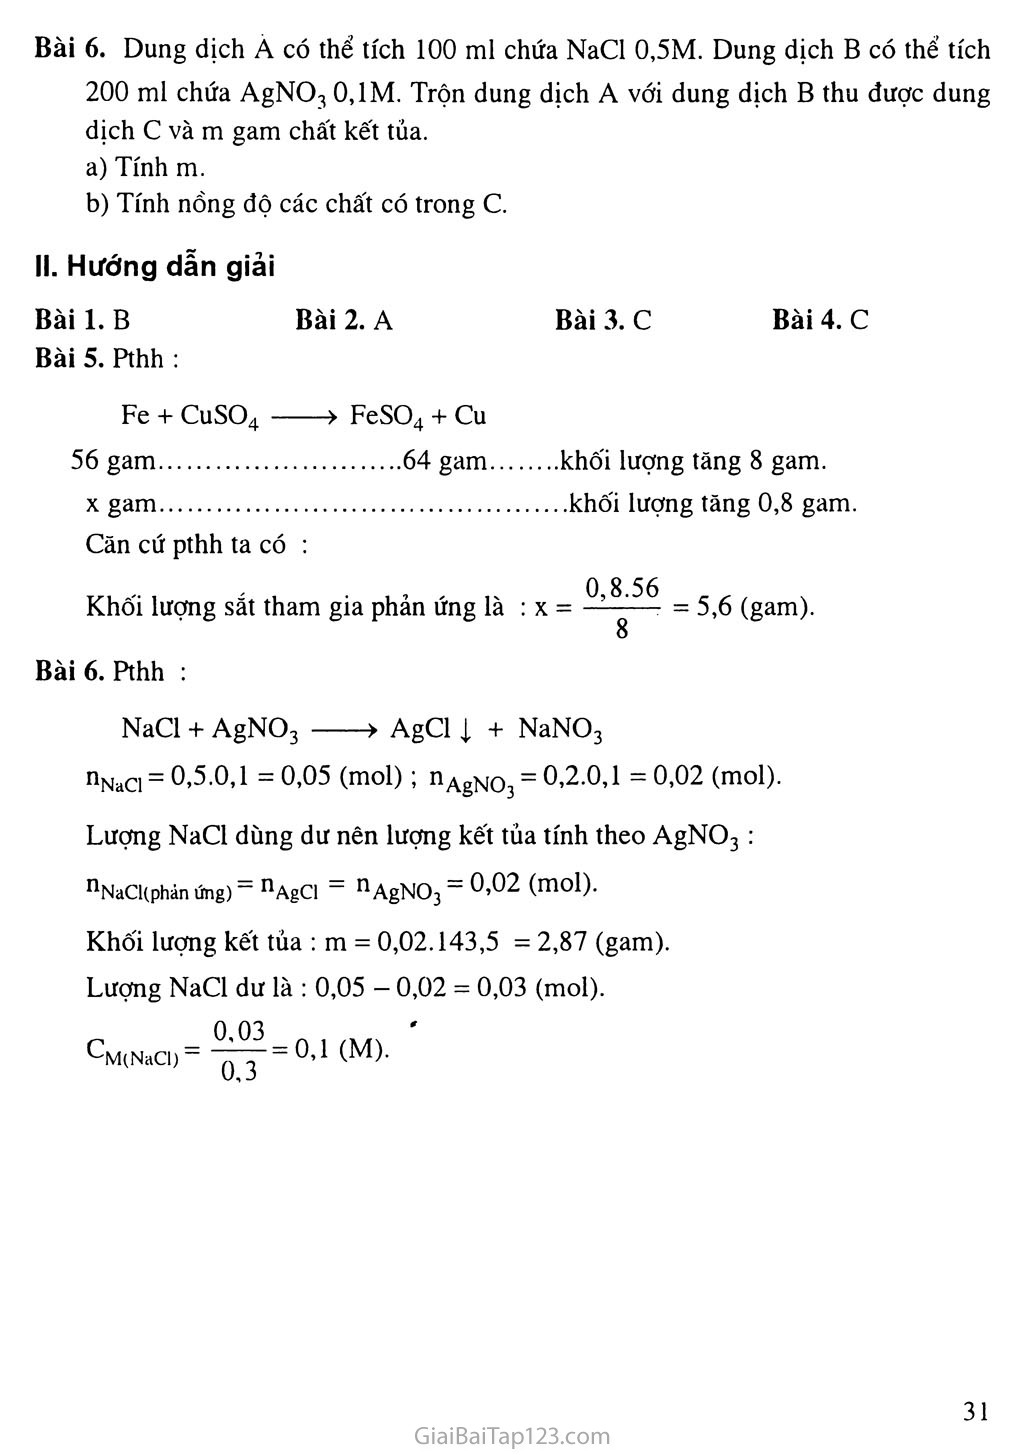 Bài 9: Tính chất hóa học của muối trang 3